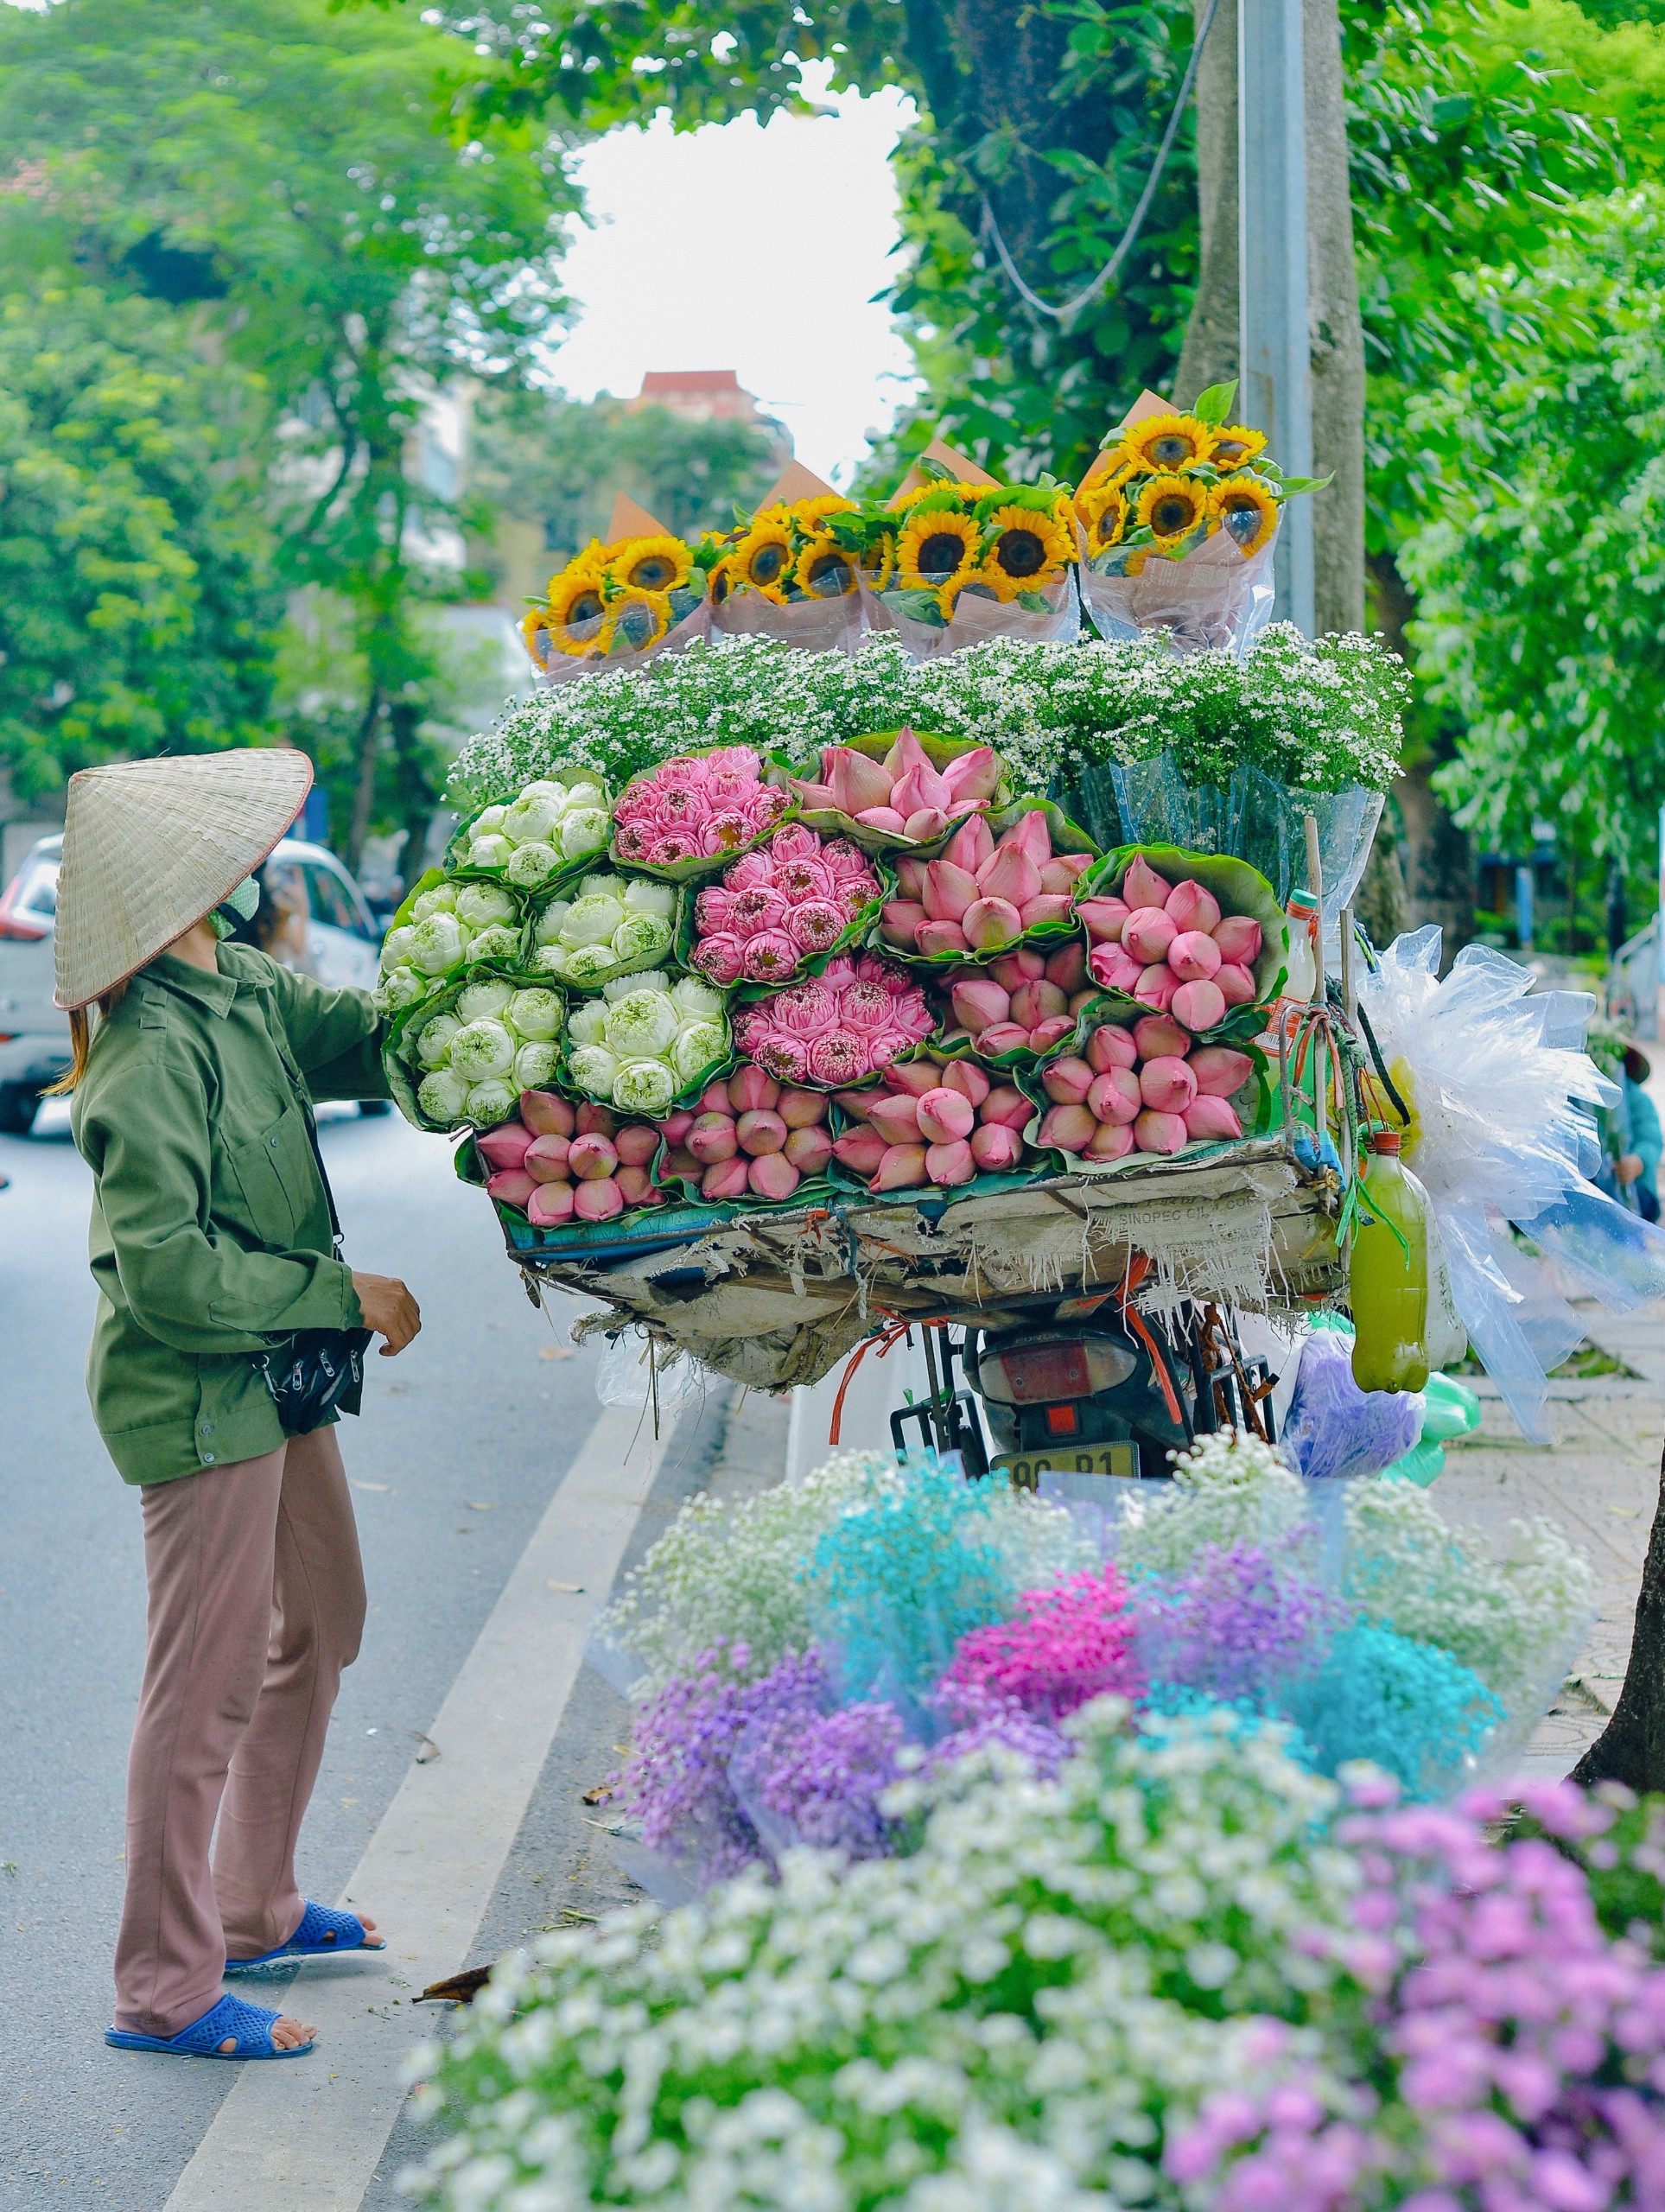 Xe hàng hoa: Những chiếc xe hàng hoa tại thành phố là một thước phim giới thiệu sự phát triển và thịnh vượng của đất nước. Có rất nhiều loại hoa và quả tươi được mang đến từ xa xôi để cung cấp cho cư dân địa phương. Những hình ảnh tuyệt đẹp về xe hàng hoa sẽ khiến bạn cảm thấy ngạc nhiên và thích thú.